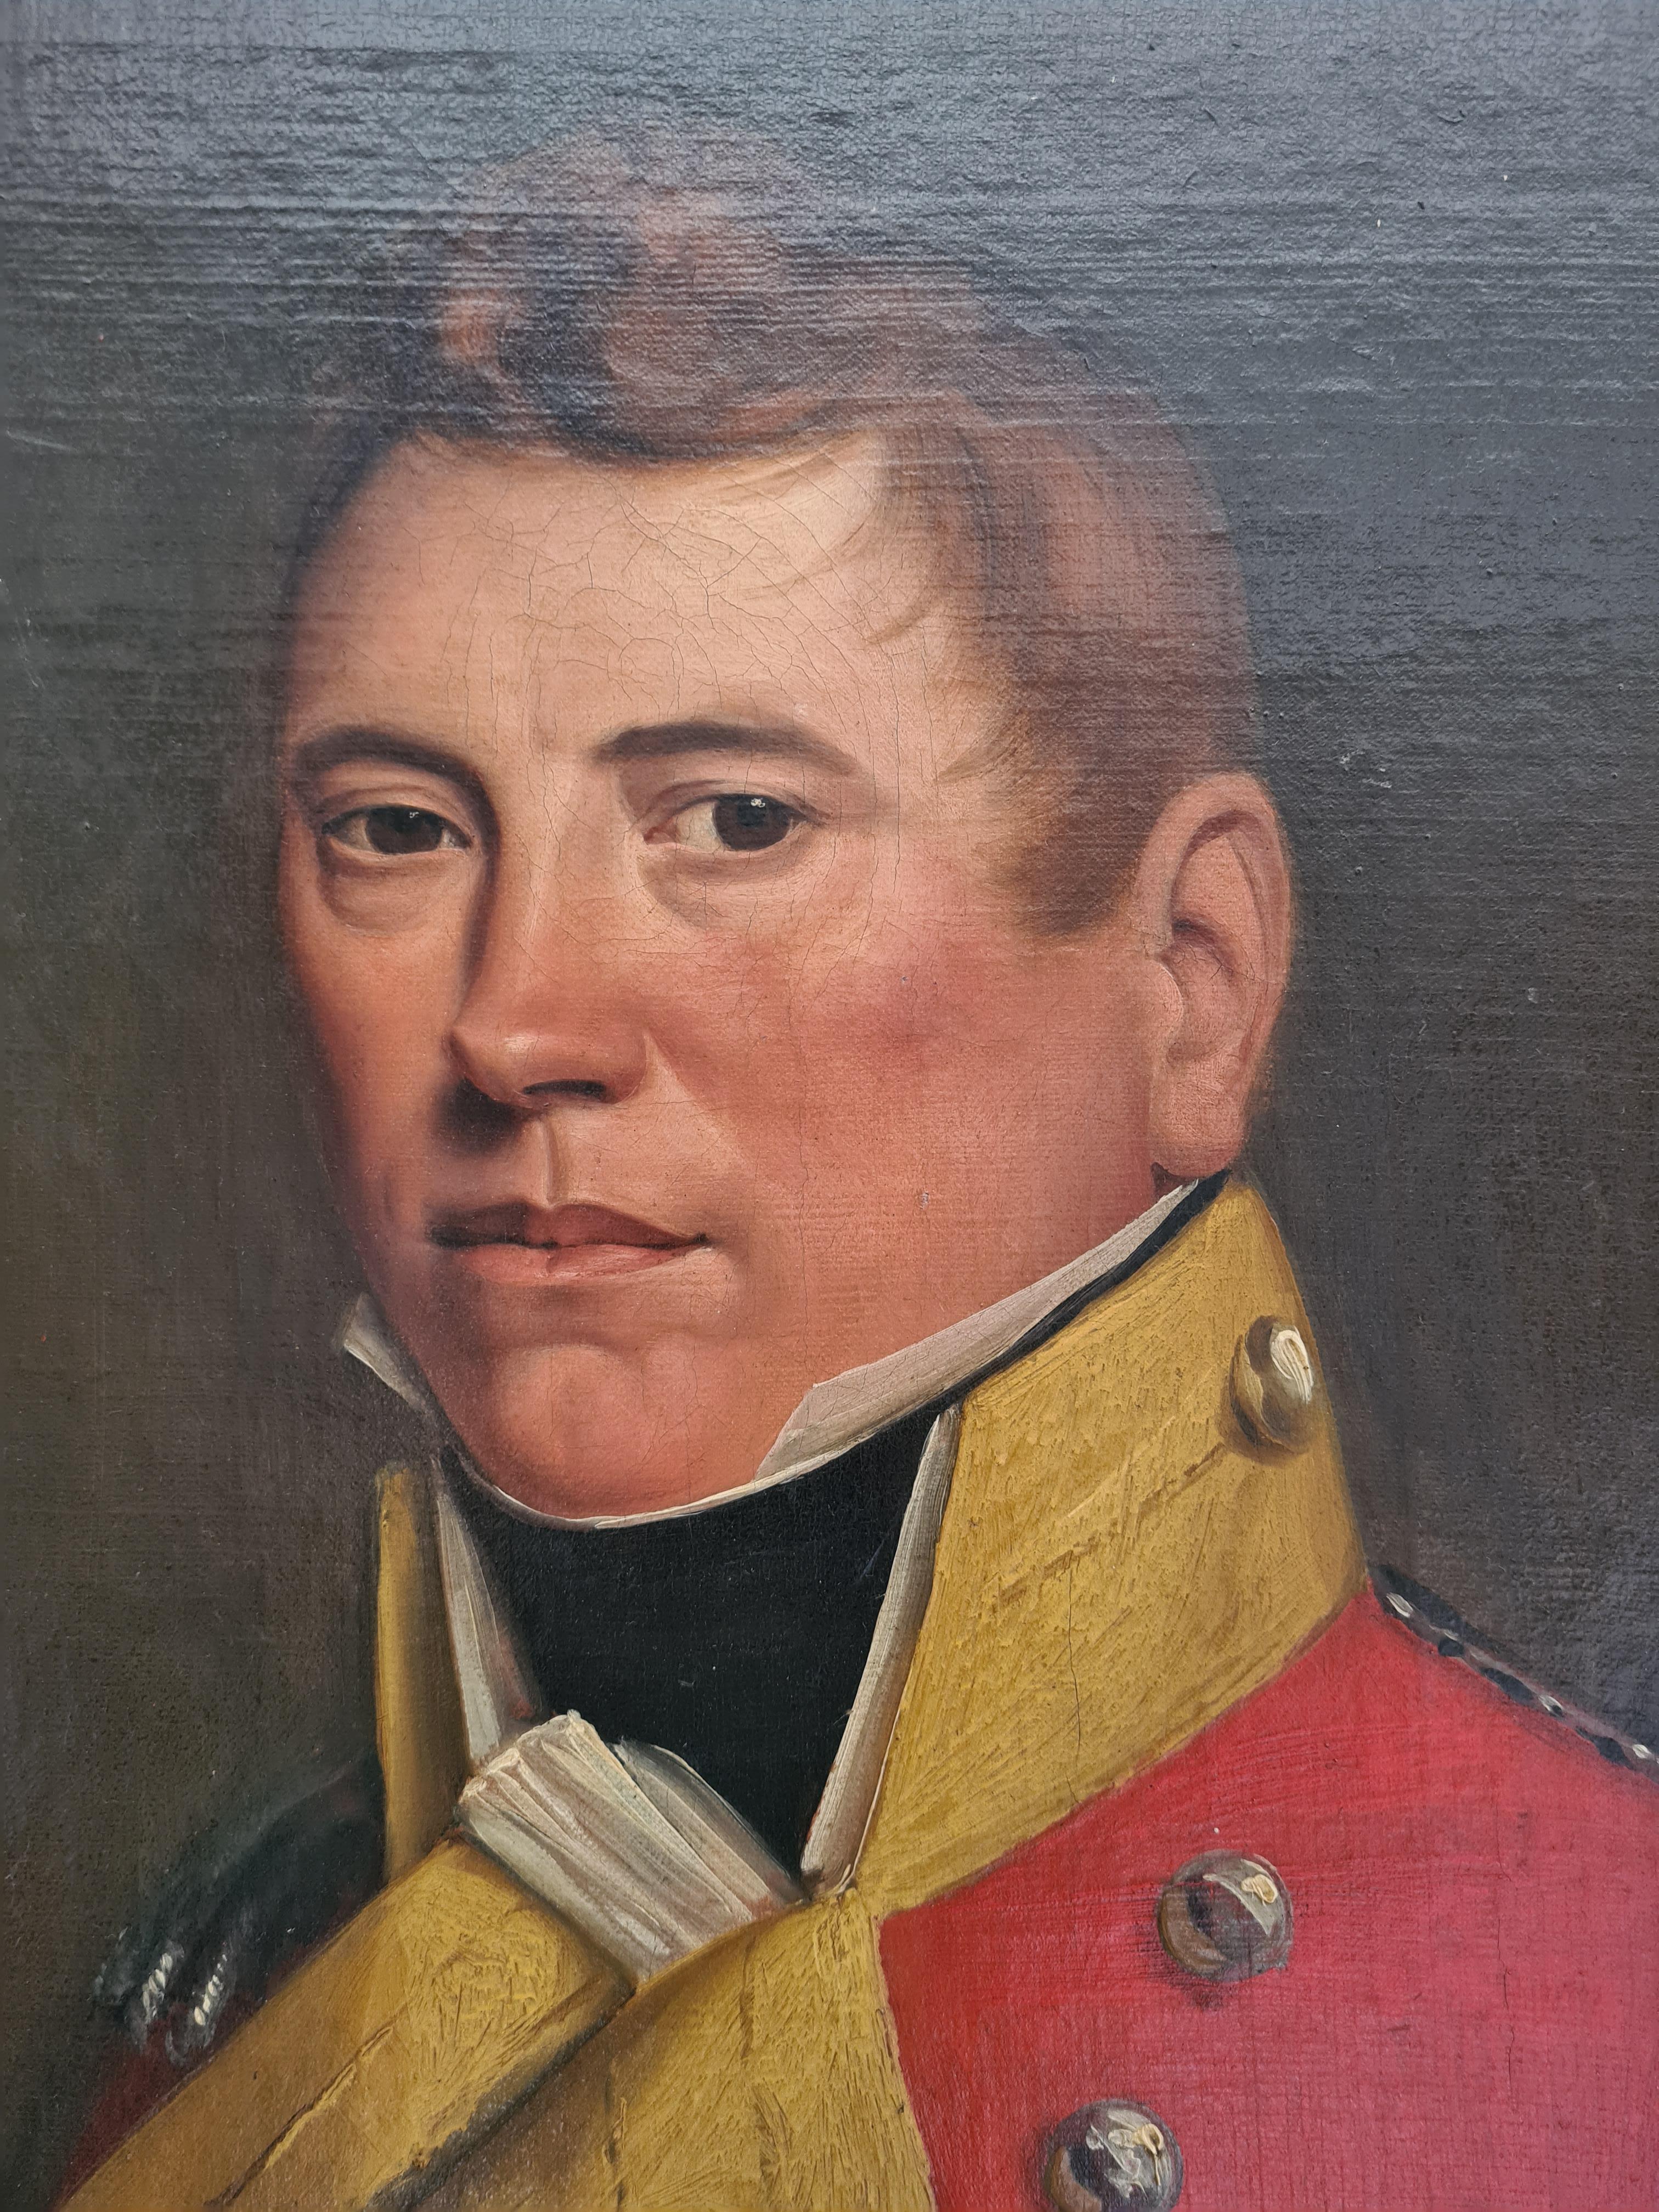 Porträt aus dem 18. Jahrhundert, Major Alexander Brown in Militäruniform – Painting von Sir David Wilkie